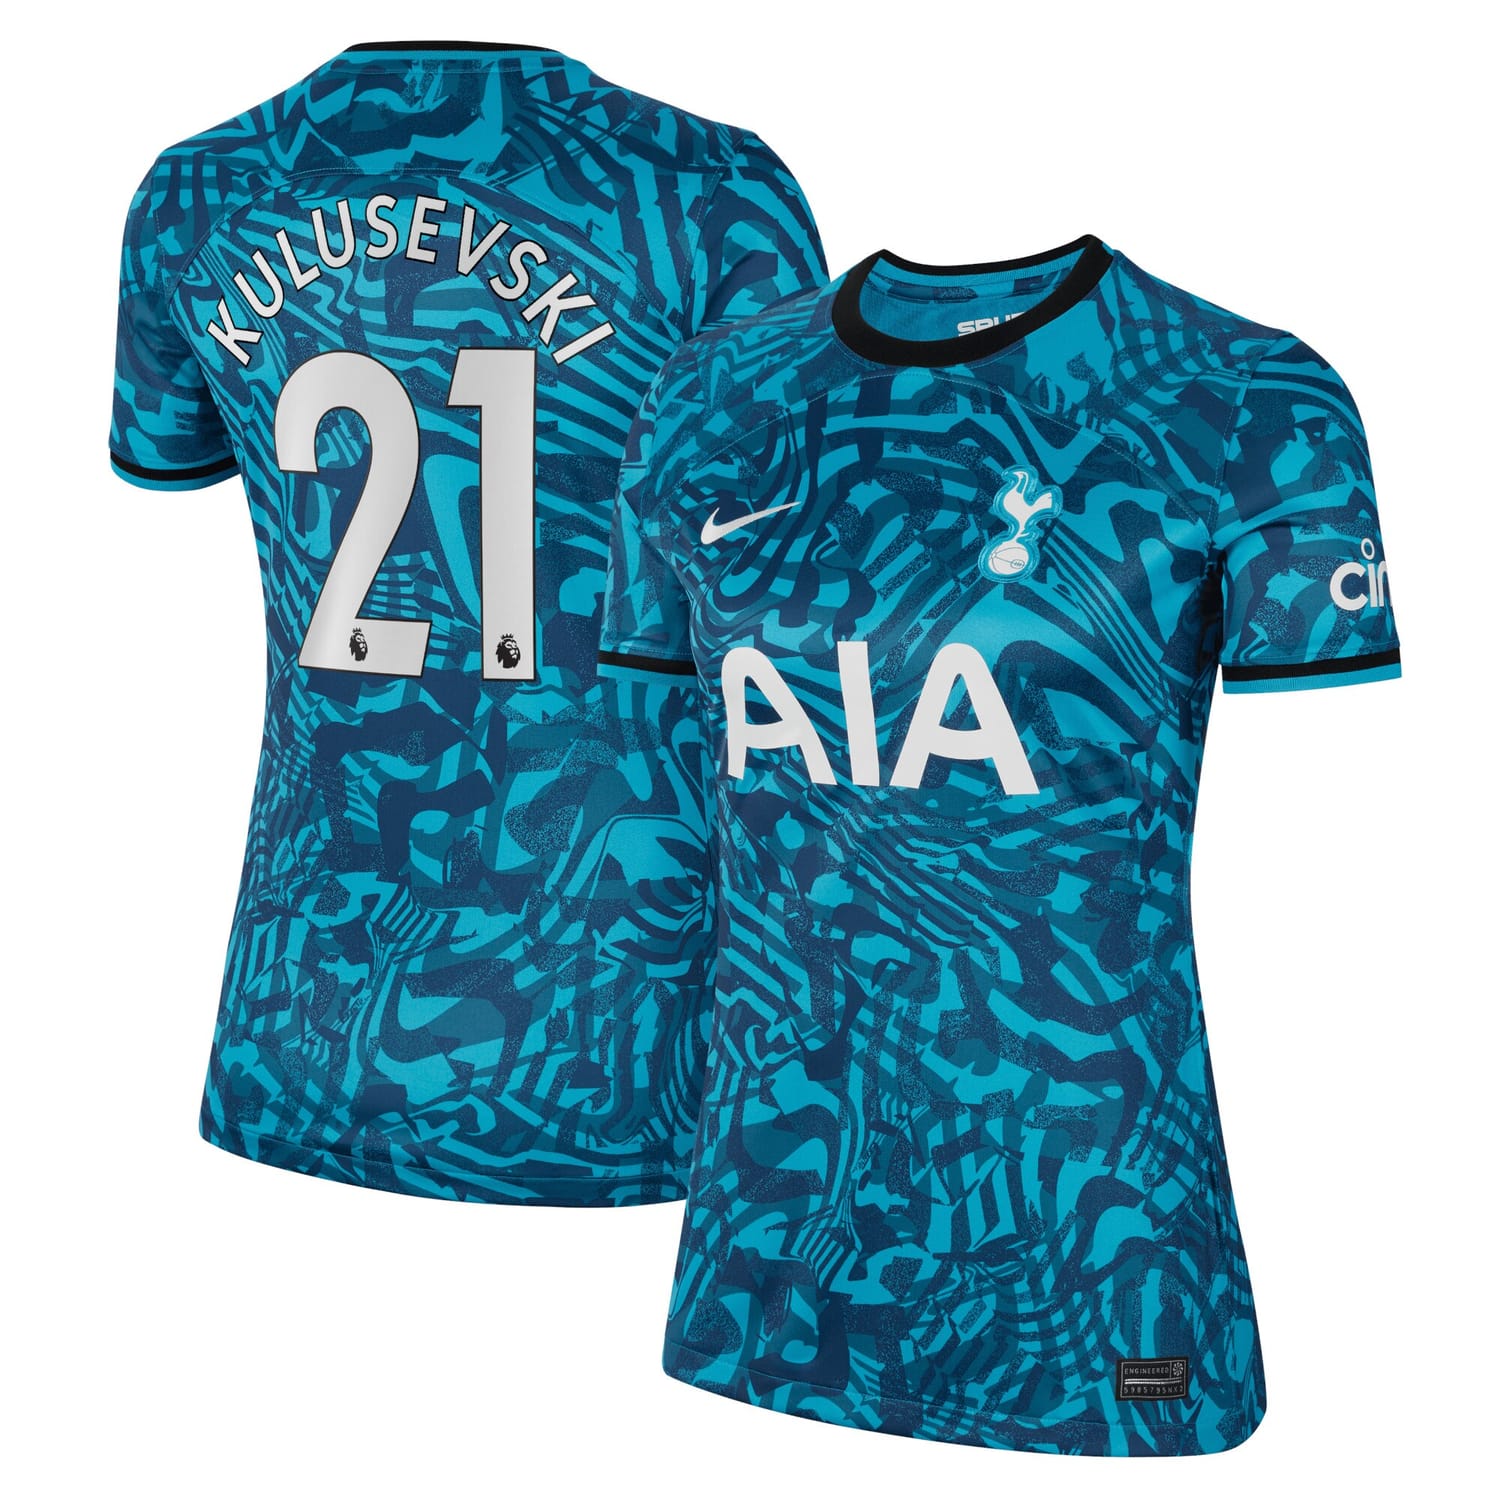 Premier League Tottenham Hotspur Third Jersey Shirt 2022-23 player Kulusevski 21 printing for Women